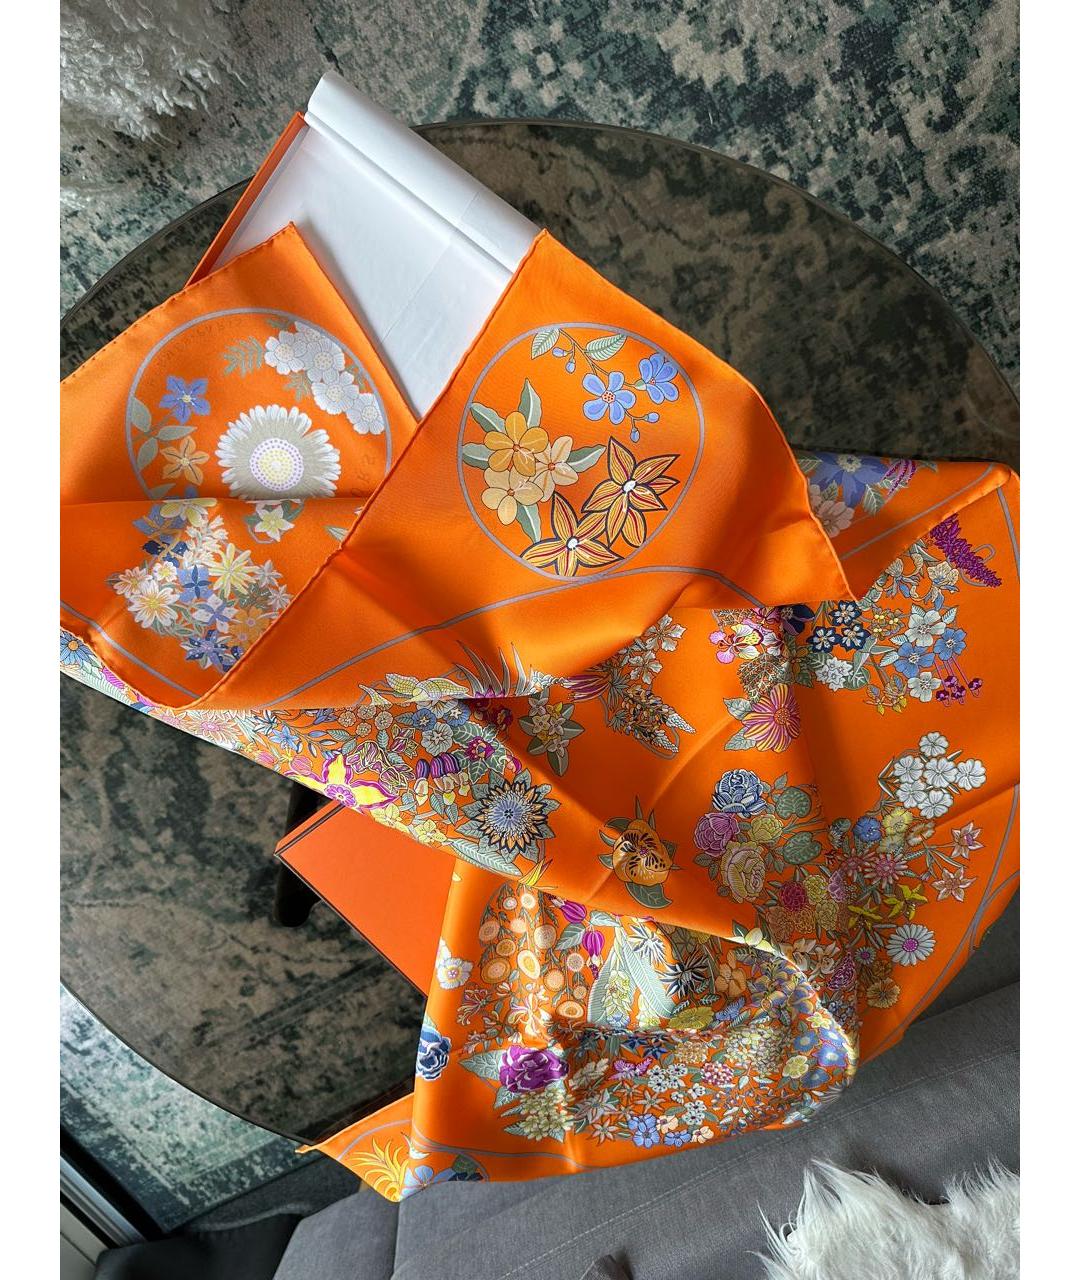 HERMES PRE-OWNED Оранжевый шелковый платок, фото 7